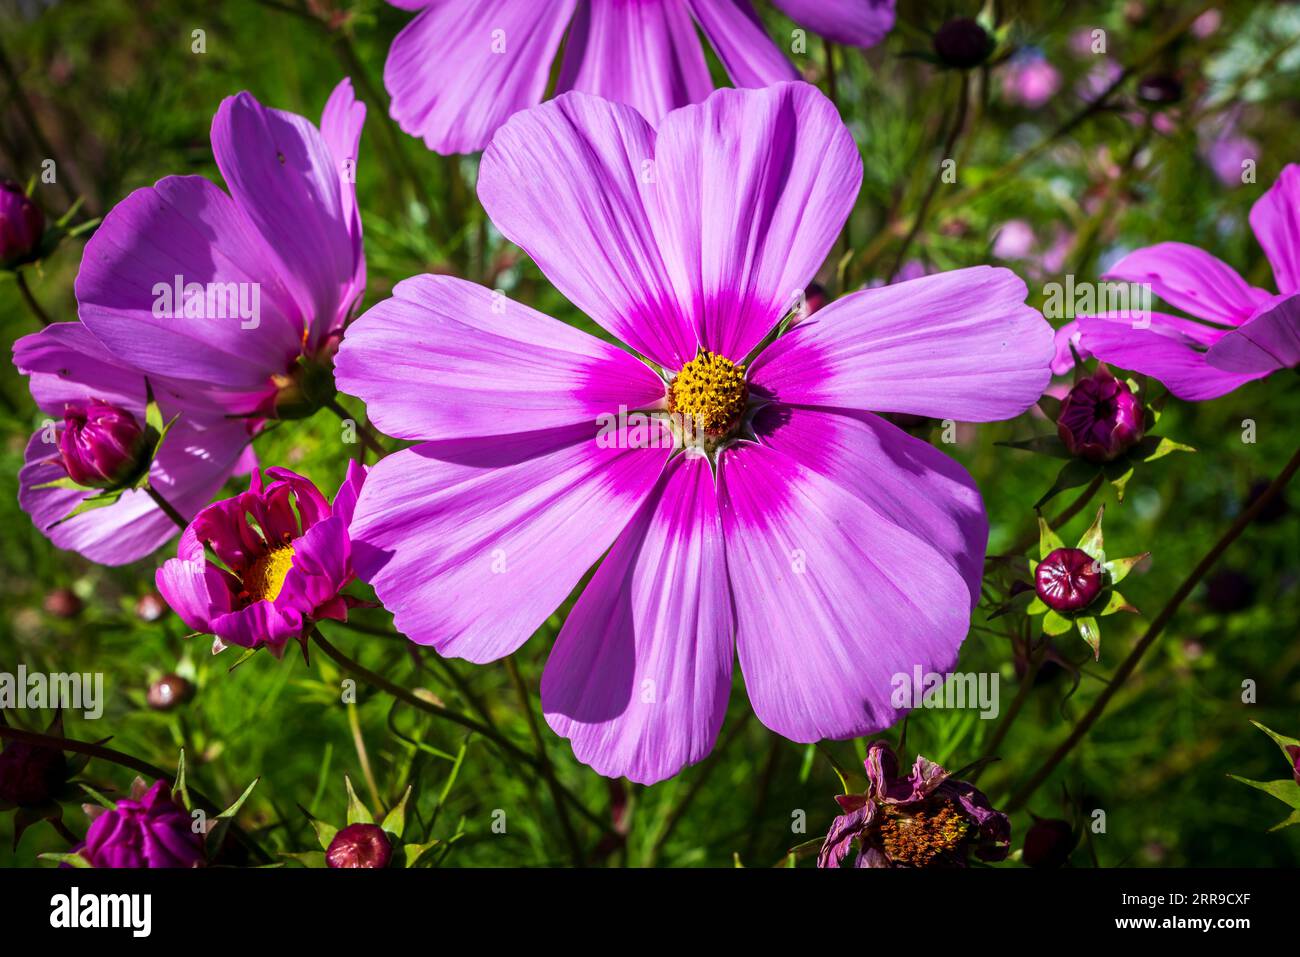 Le Cosmos bipinnatus, alias Garden Cosmos ou Aster mexicain. fleur violette. Banque D'Images